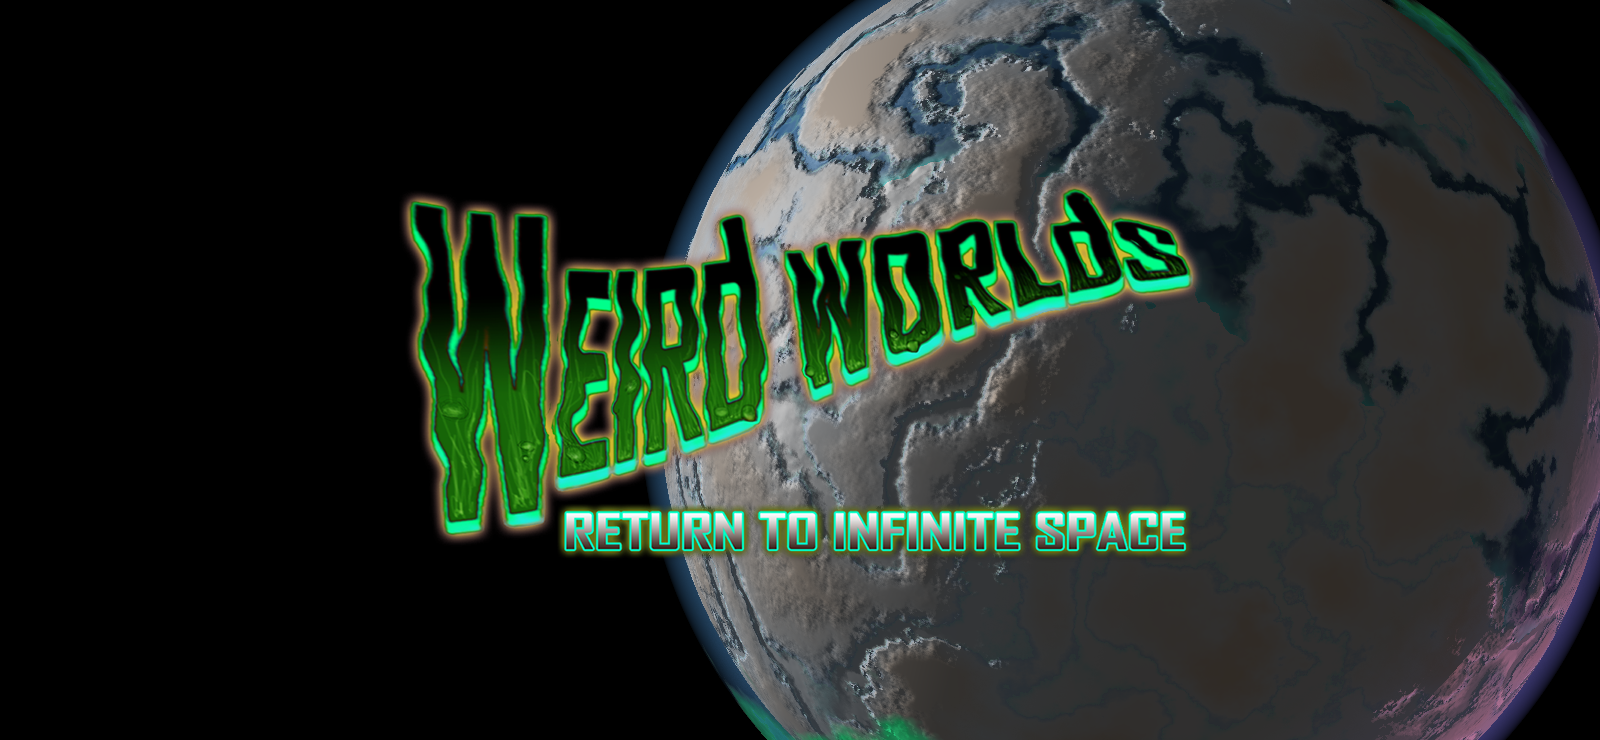 Weird Worlds: Return To Infinite Space